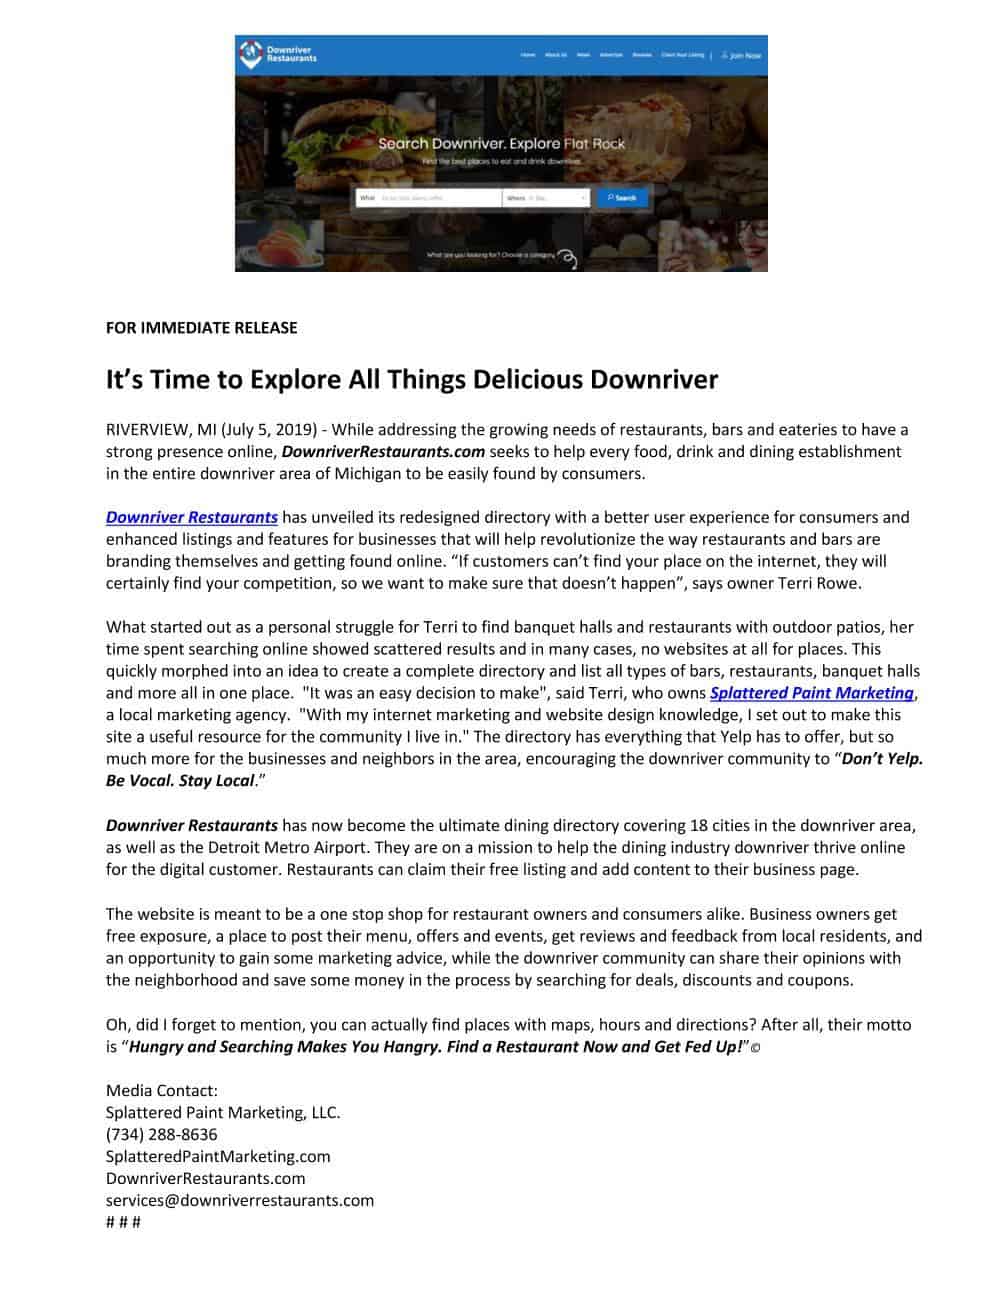 DownriverRestaurants_Press_Release_07.05.19